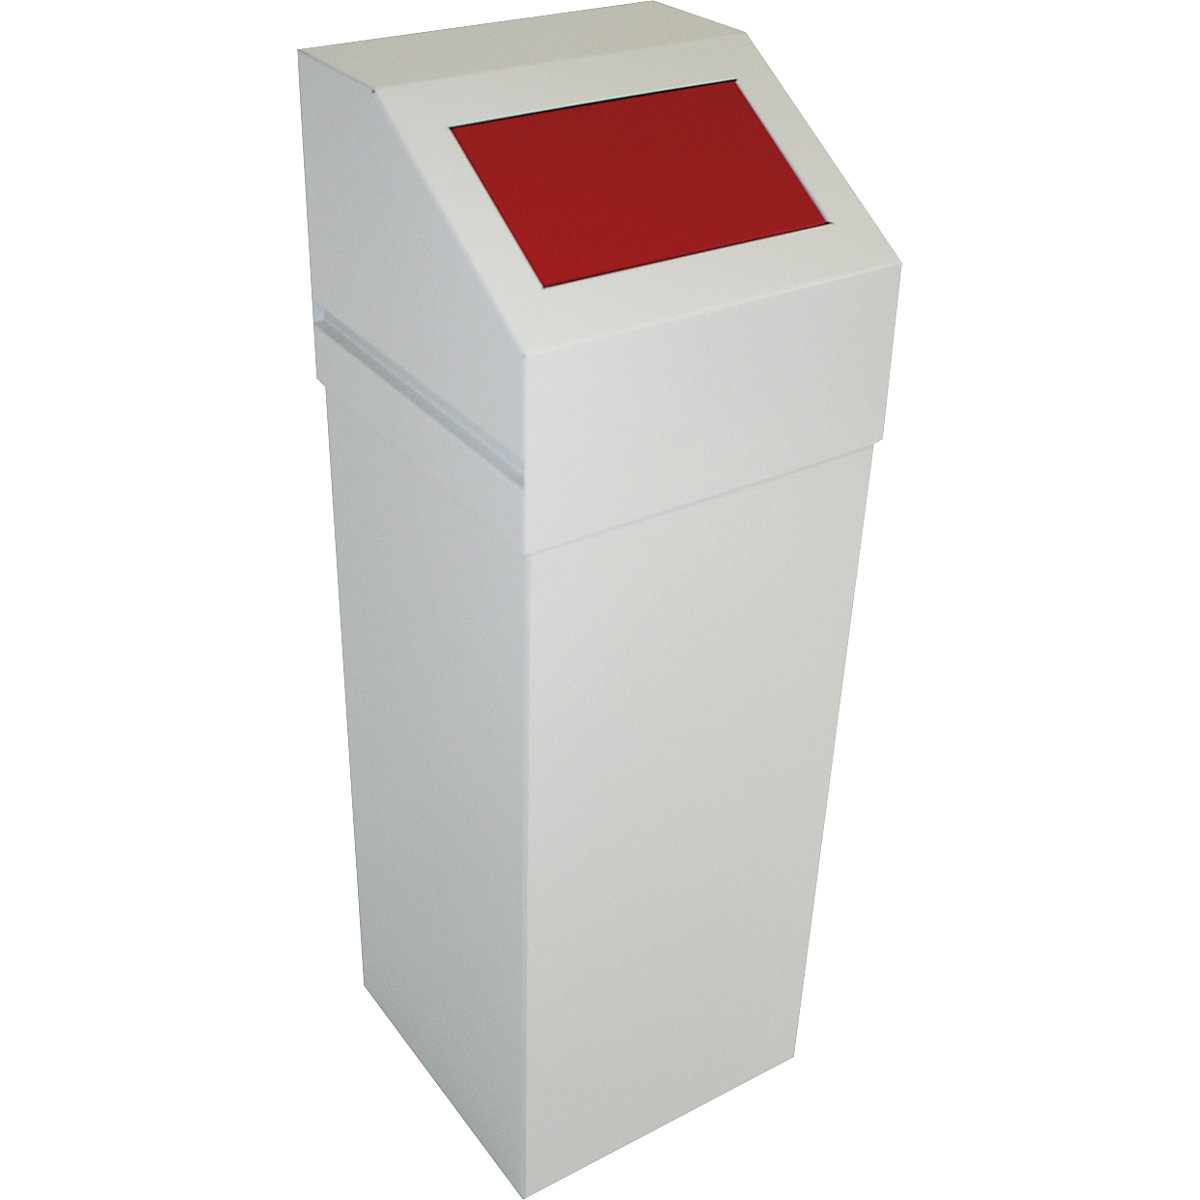 Sistema modular de separación de residuos, capacidad 65 l, con tapa roja